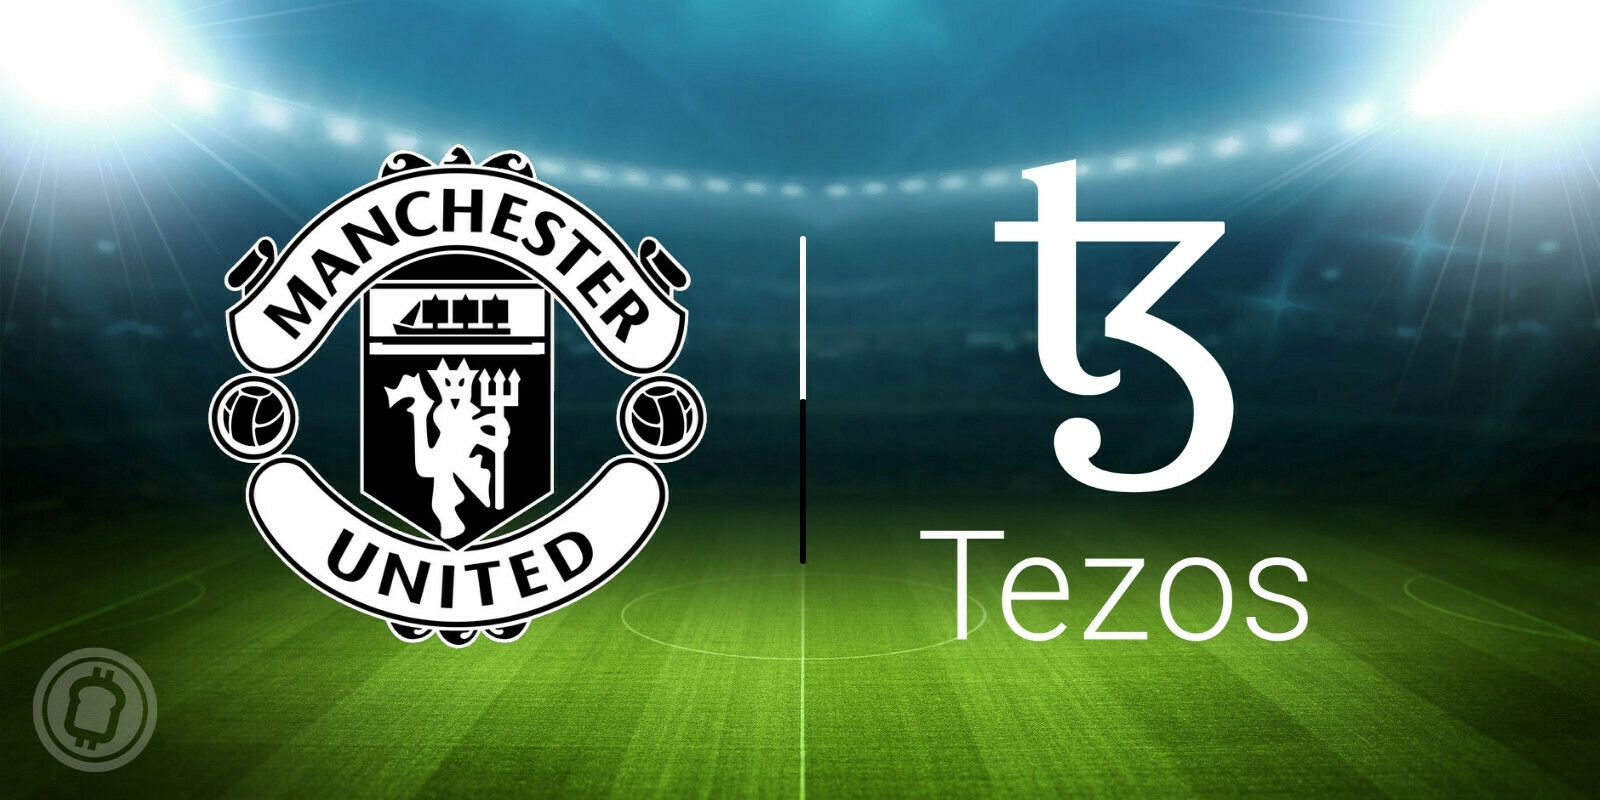 Tezos (XTZ) signe un accord à 23 millions d’euros avec Manchester United